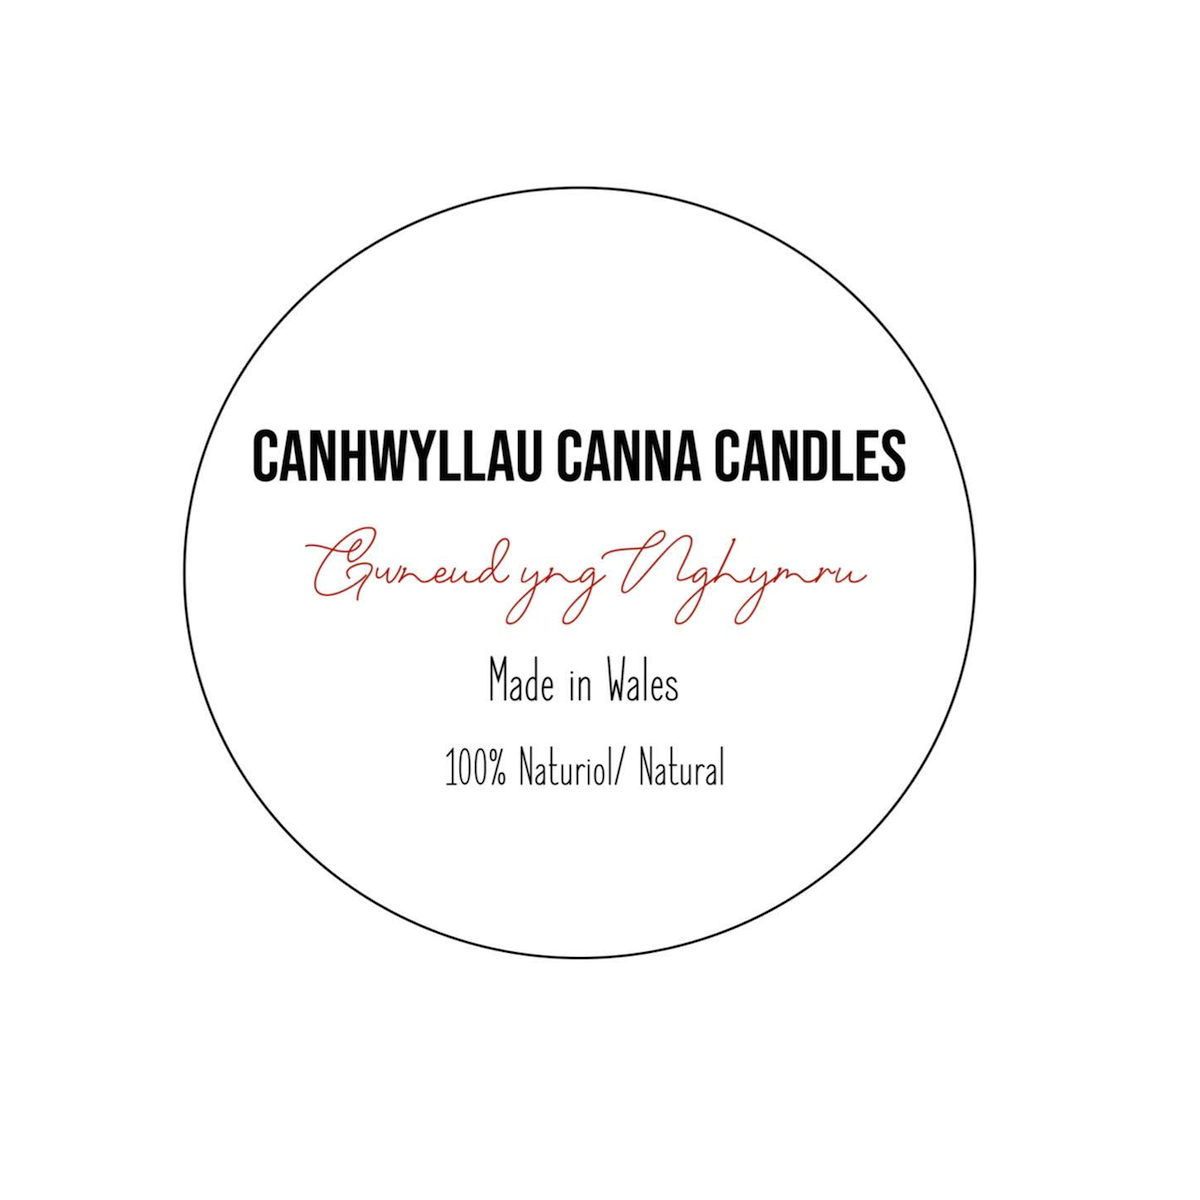 Canhwyllau Canna Candles brand logo